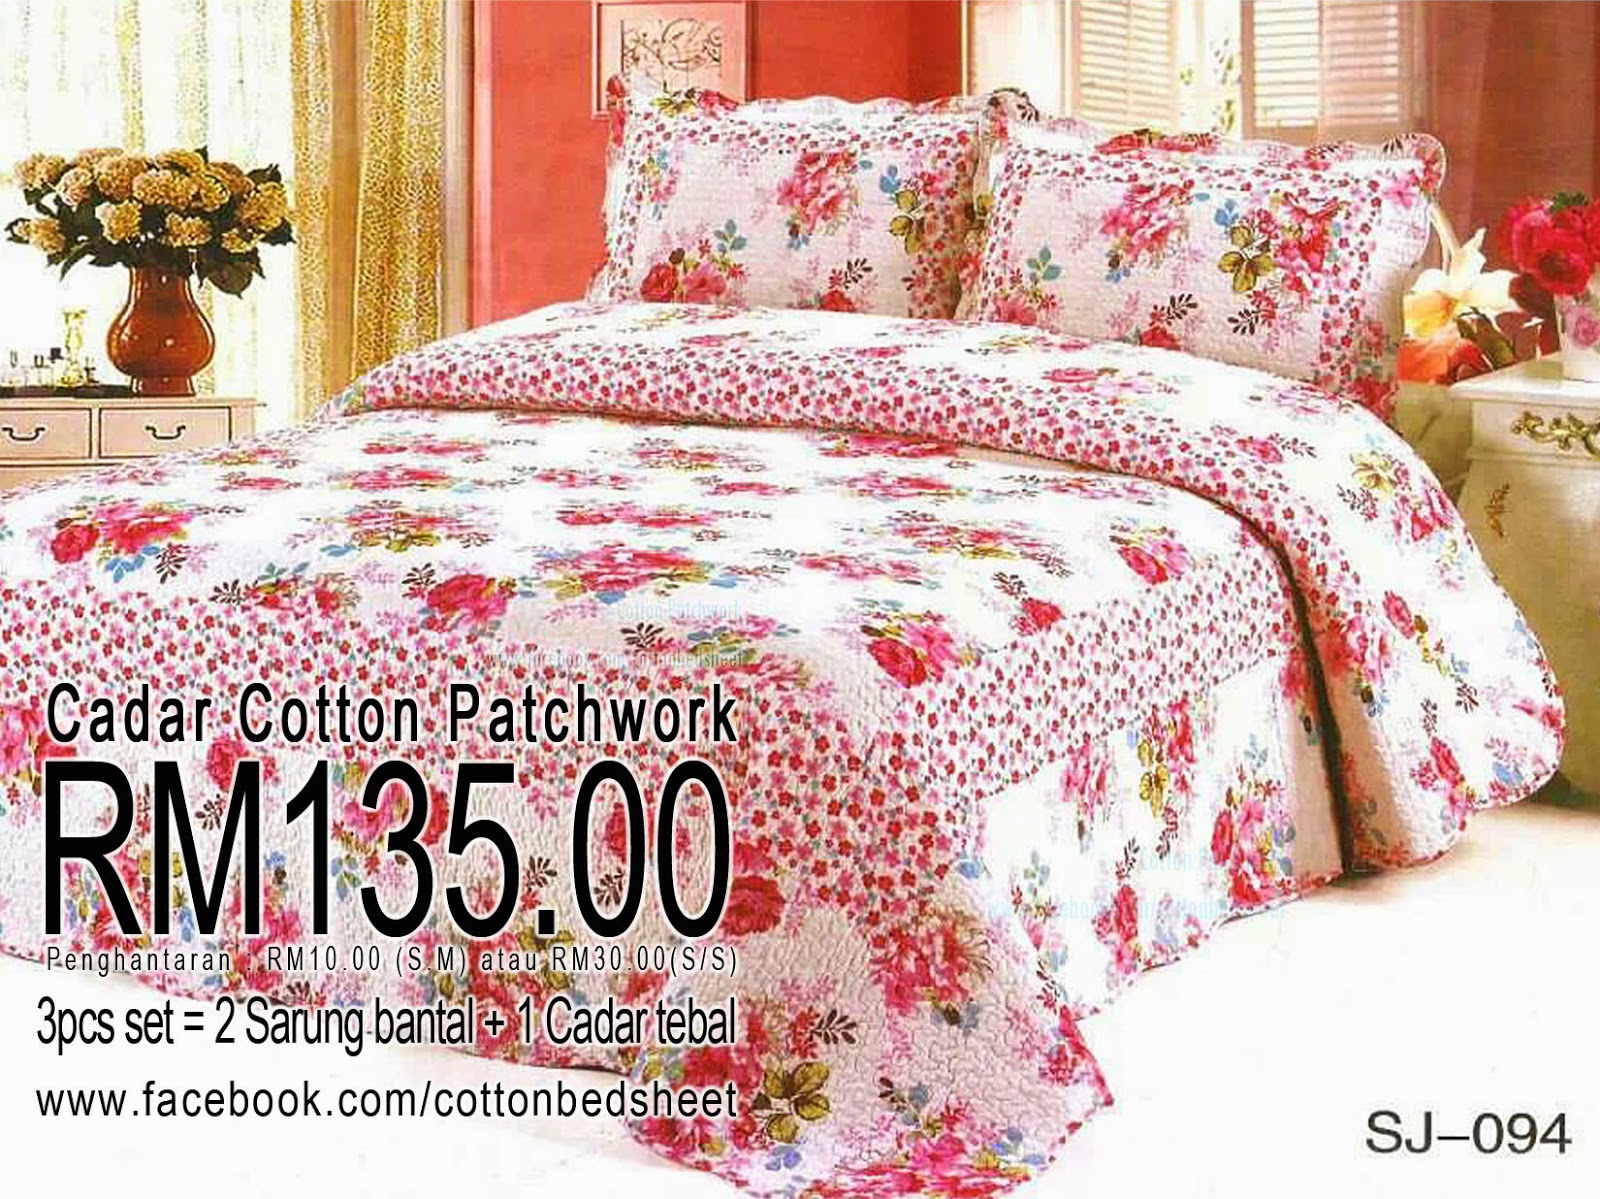 Cadar cotton patchwork: Cotton Quilt Bedsheet